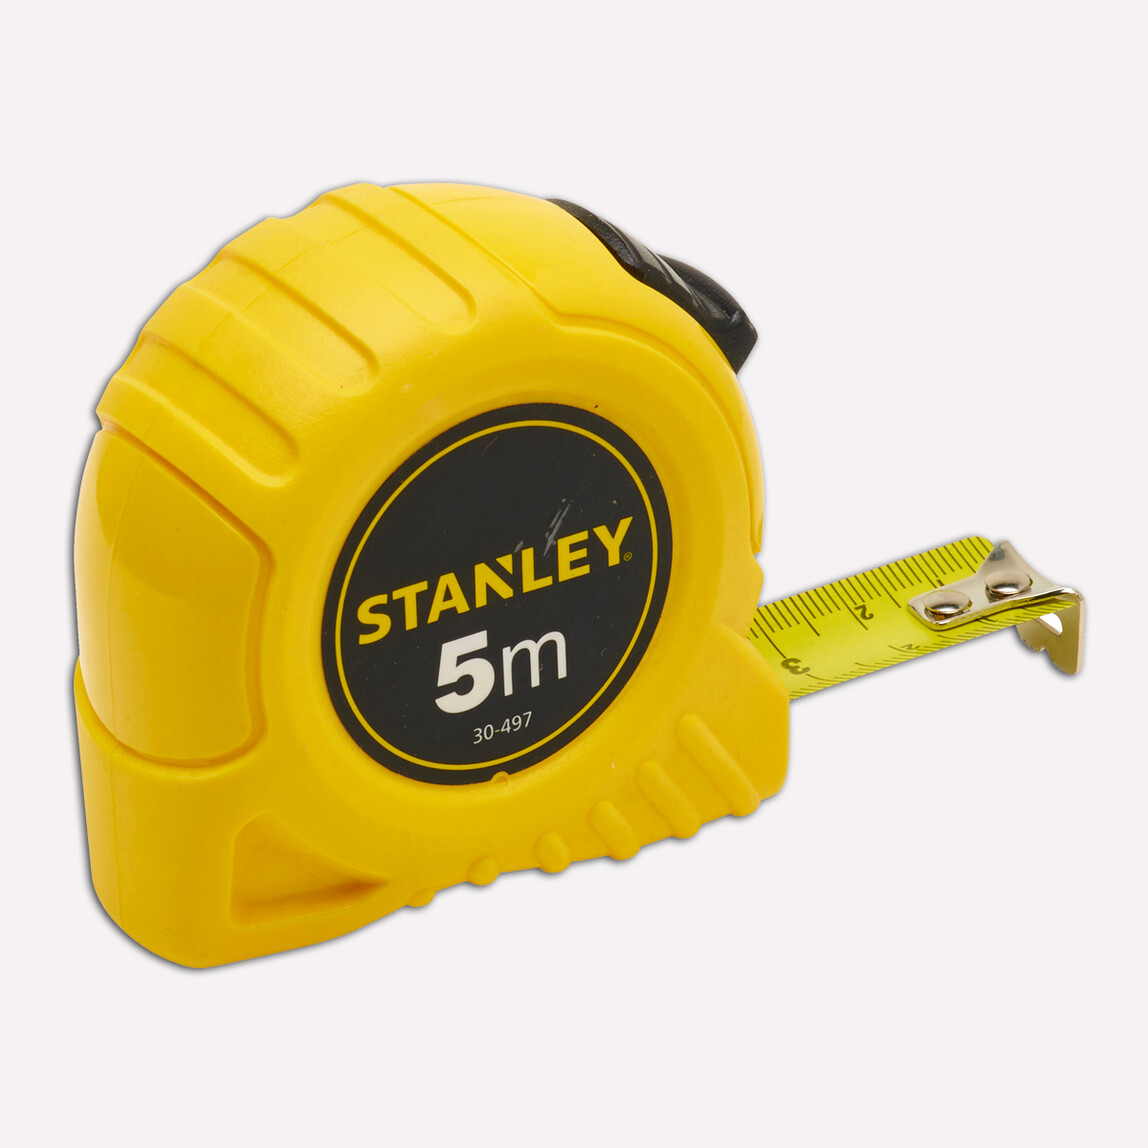    Stanley ST130497 5m Çelik Şerit Metre 